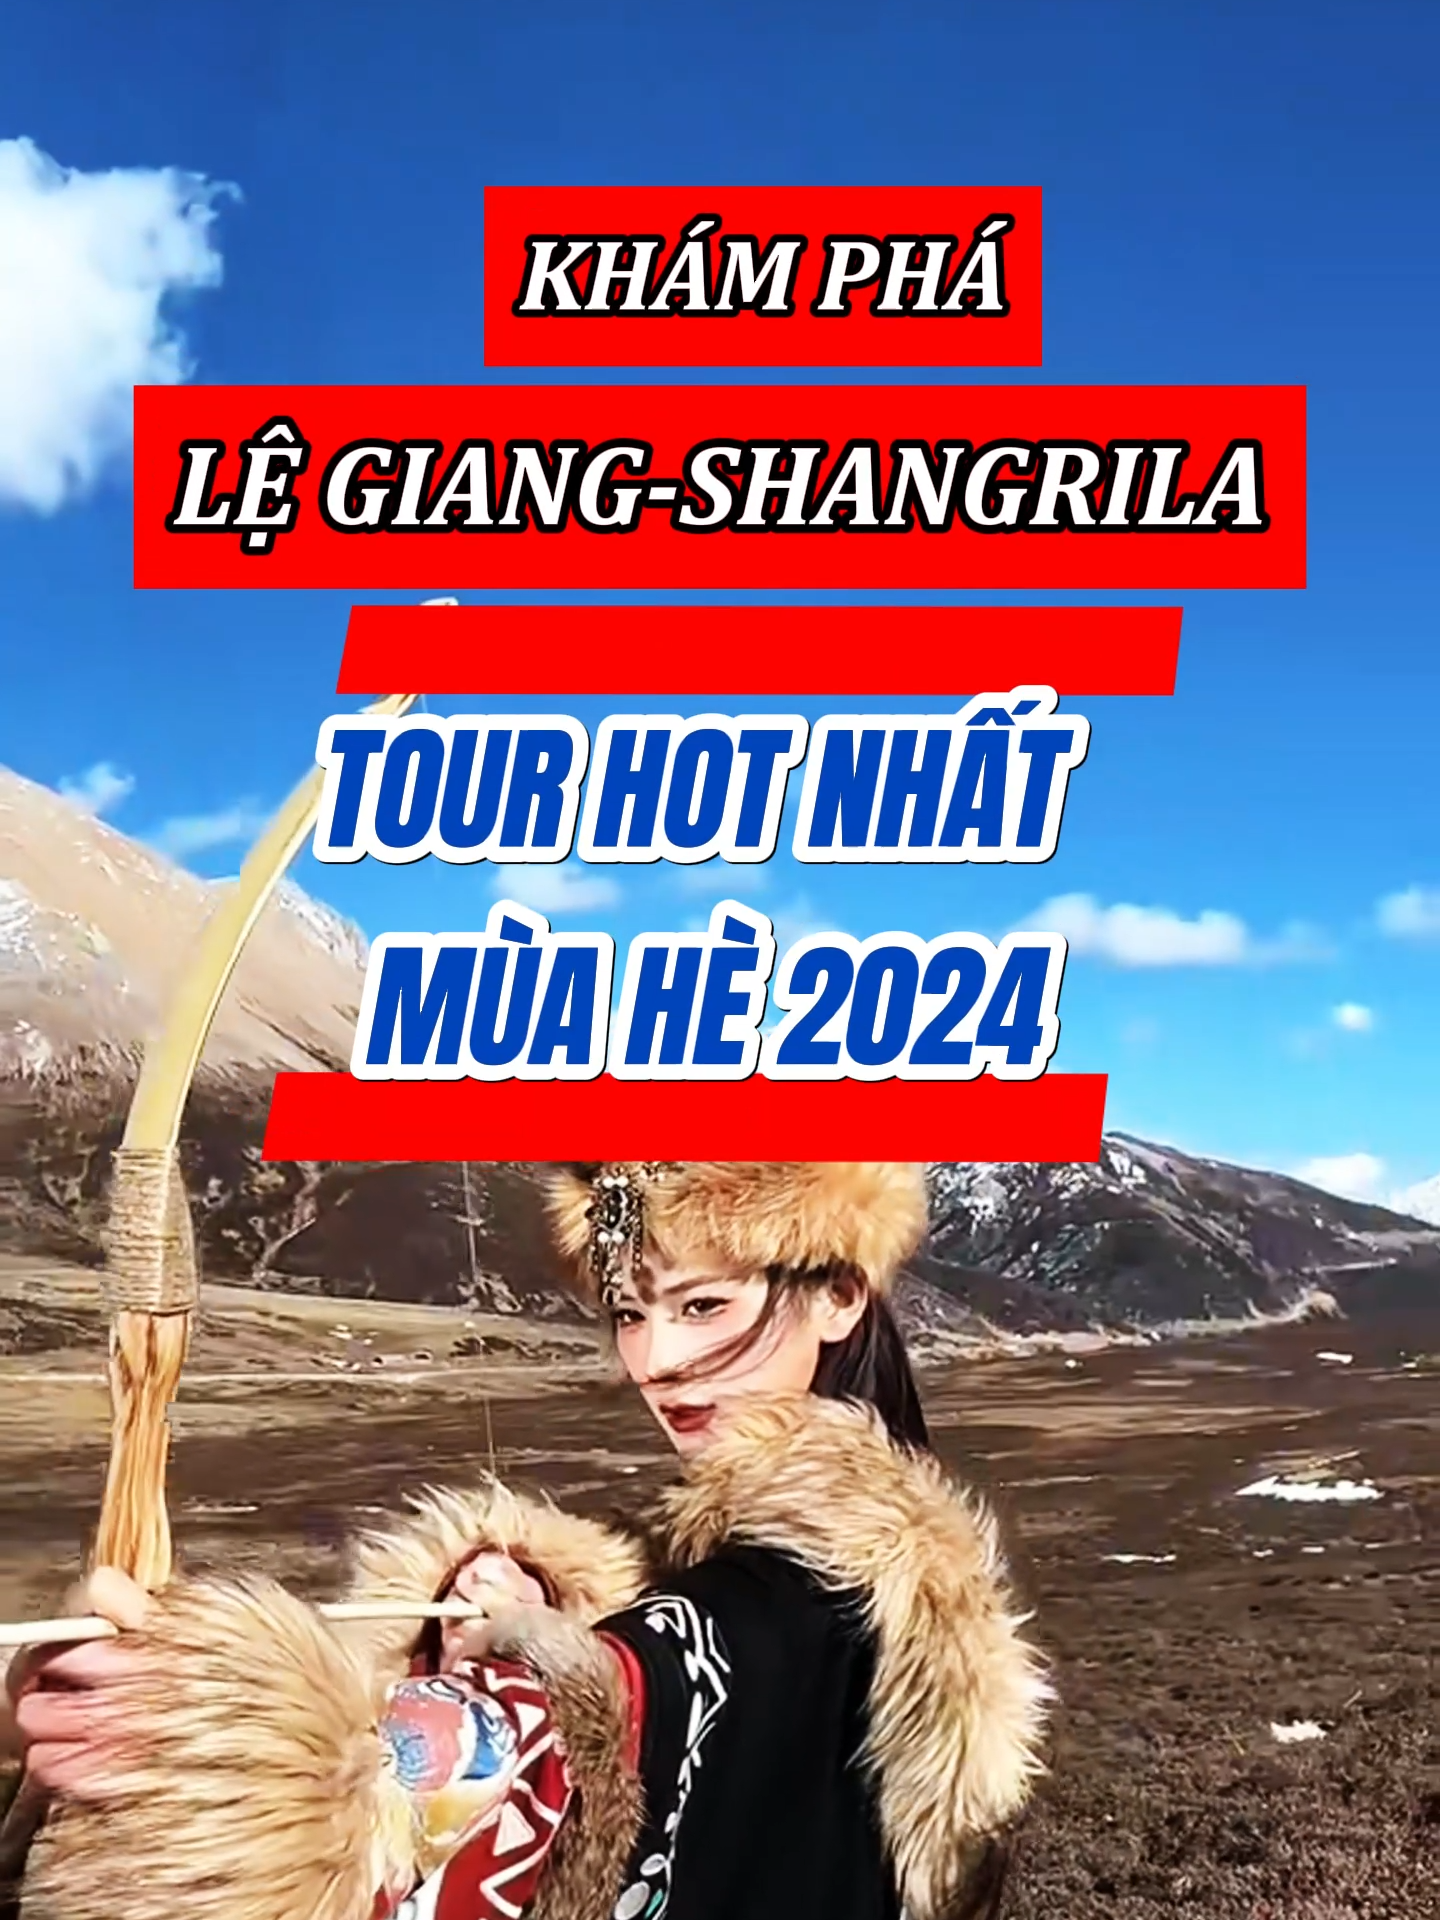 Ưu đãi 1🍠 cho Tour hot nhất mùa hè năm 2024 - Lệ Giang - Shangrila #trungquoc#china#dulichtrungquoc#travelchina#dulich#travel#traveltiktok#viral#toptentravel#top10travel